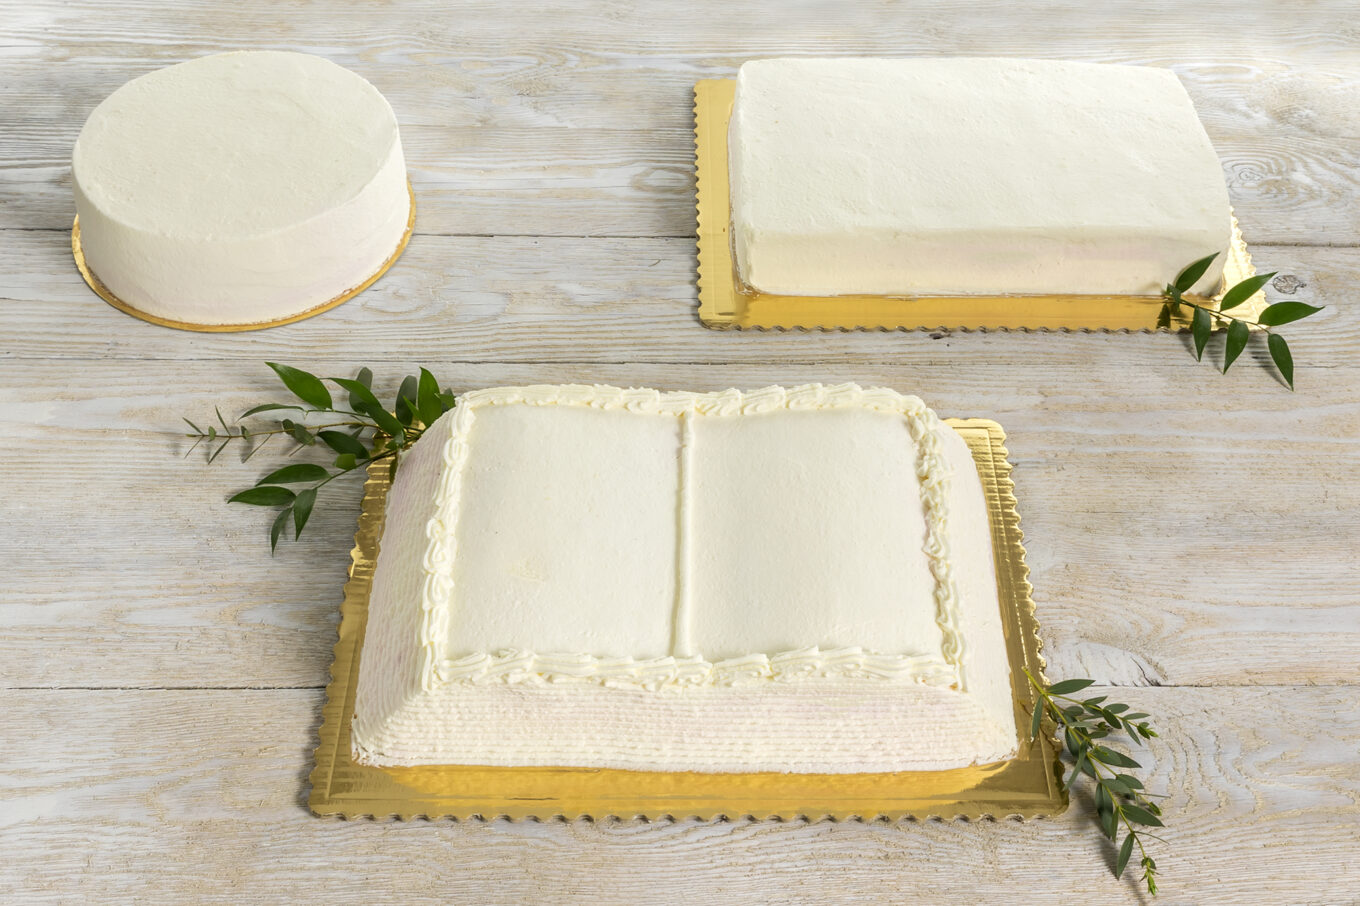 formas para tartas Cukiernia Jacek Placek es sinónimo del sabor de las tartas caseras elaboradas con productos naturales.